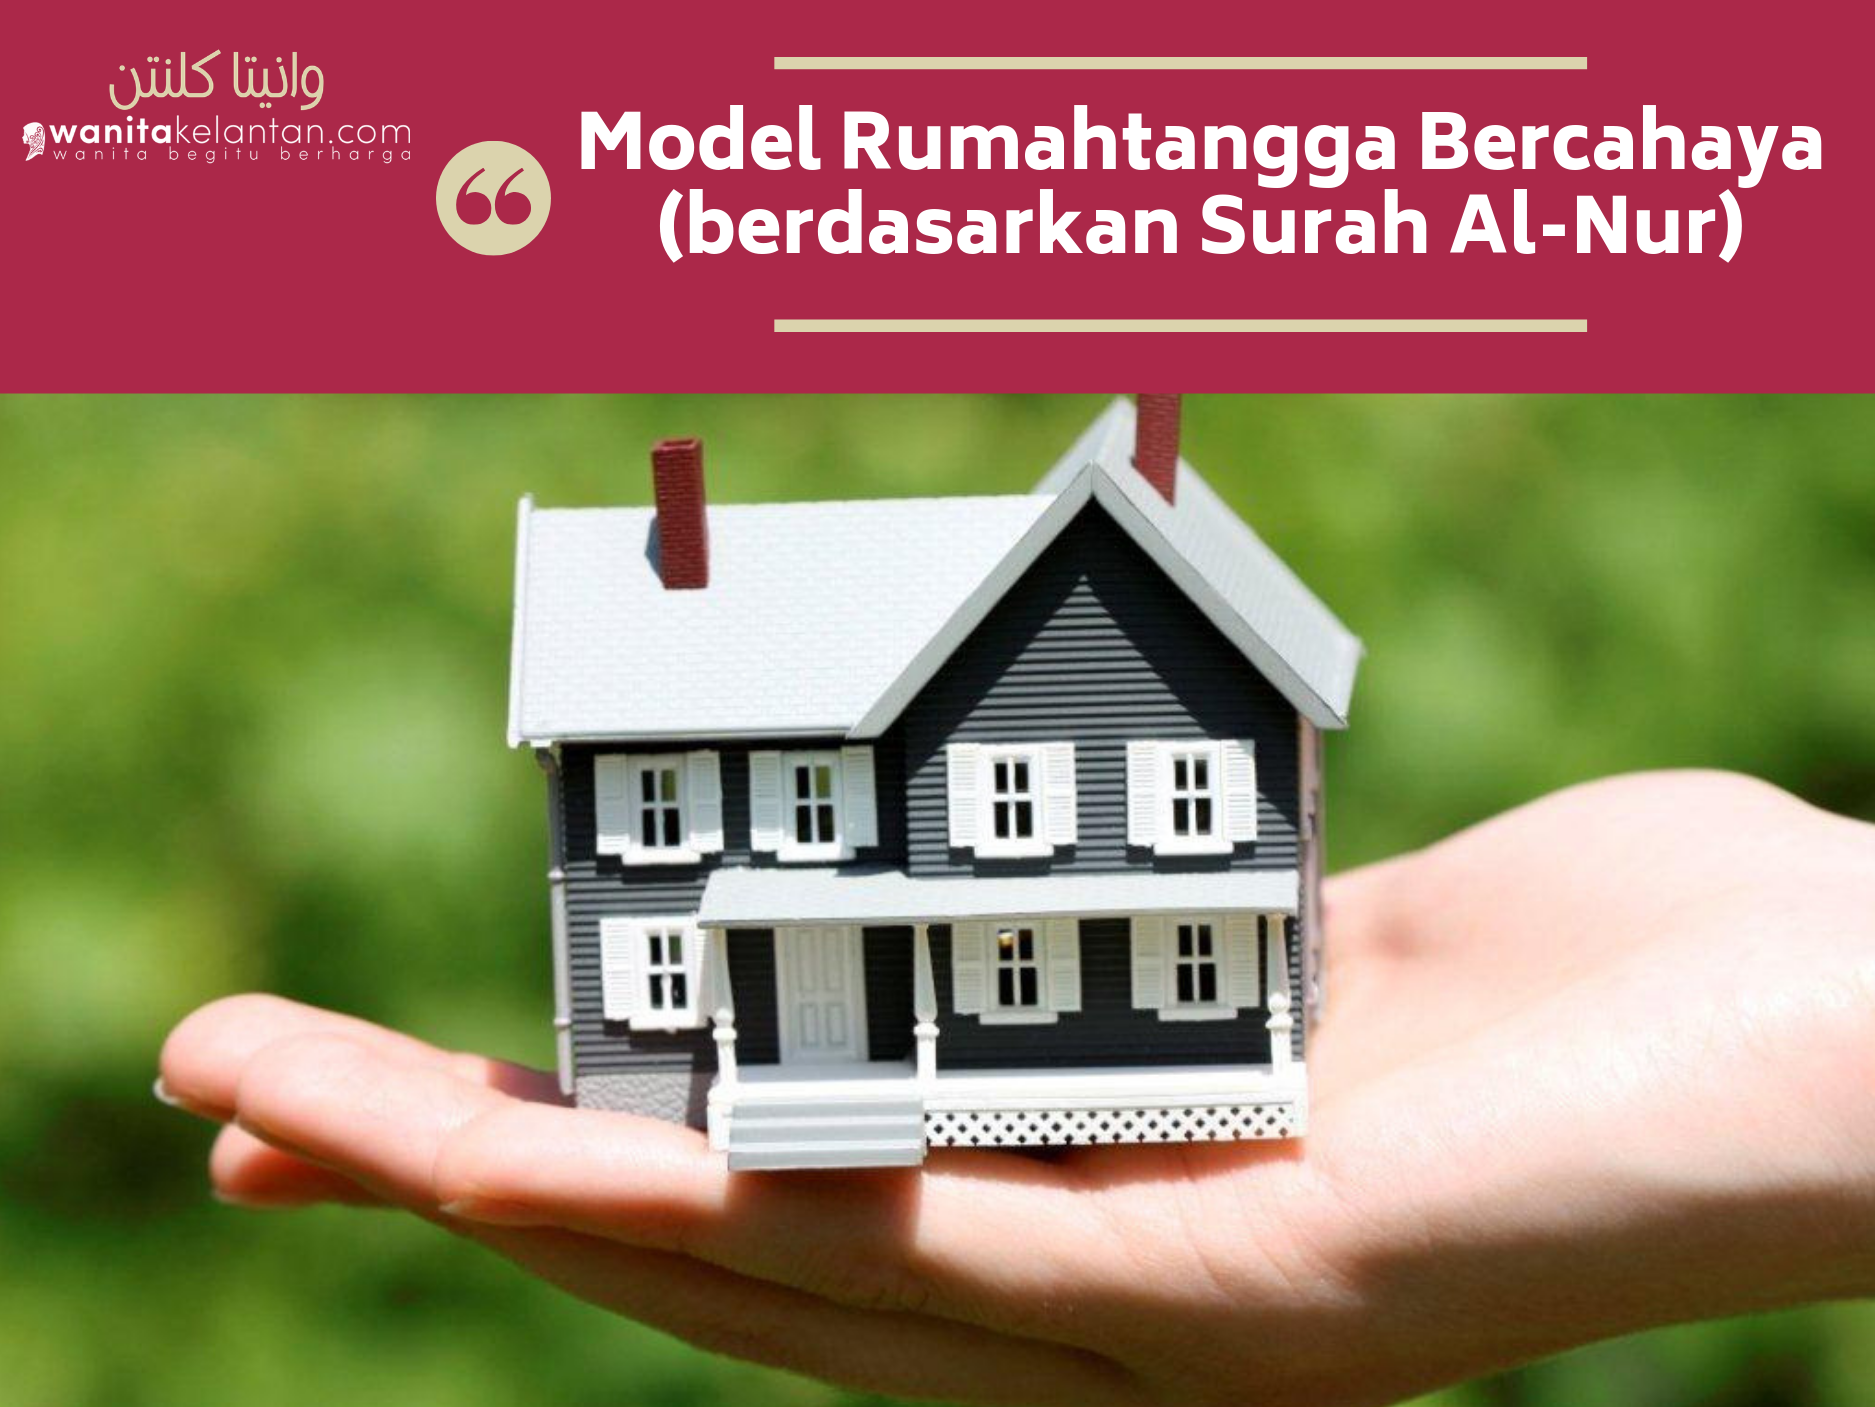 Model Rumahtangga Bercahaya (berdasarkan Surah Al-Nur)